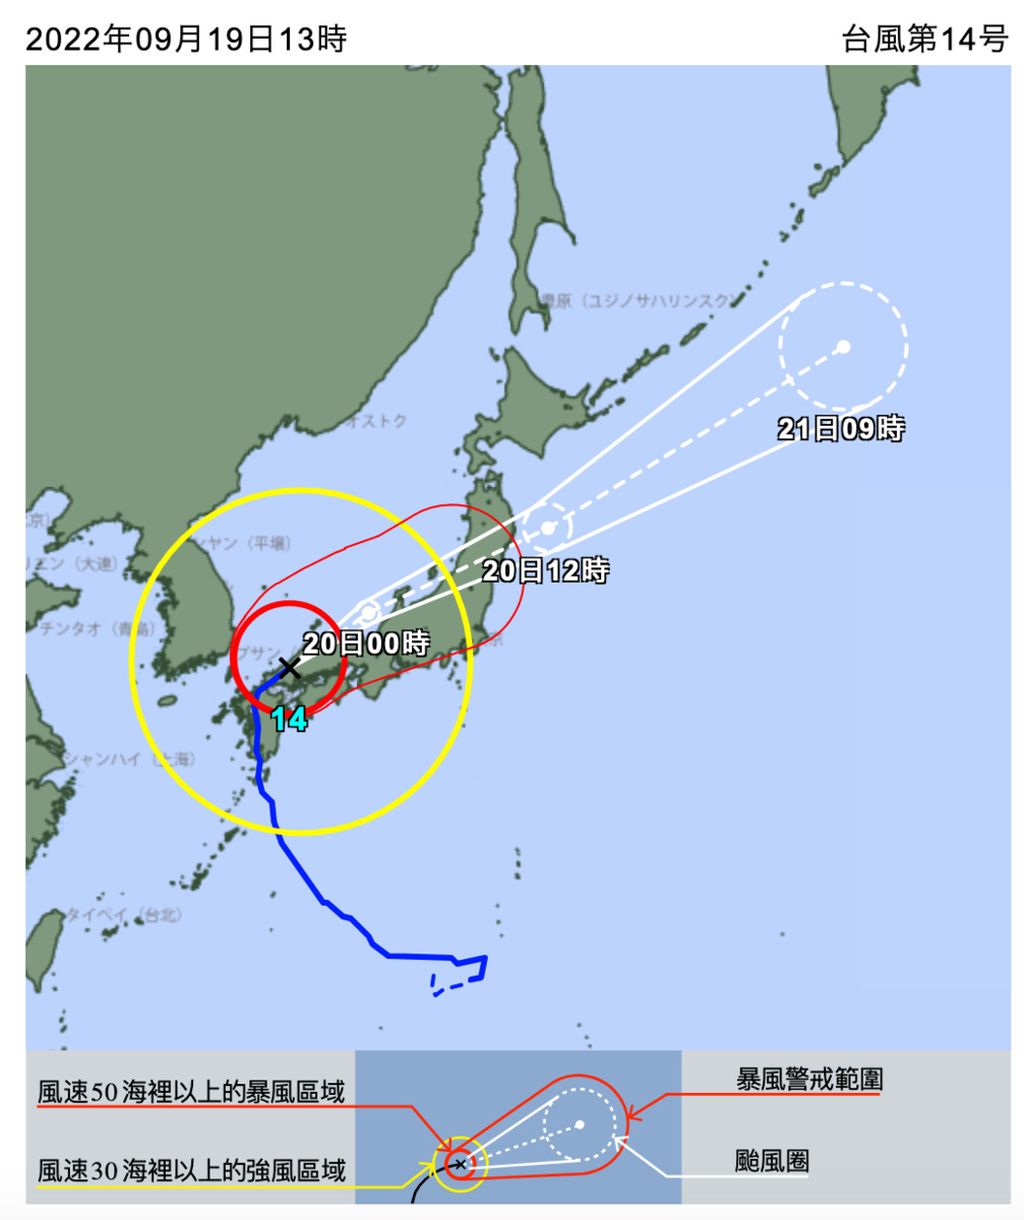 Perkiraan pergerakan siklon Nanmadol, siklon terkuat pada 2022 ini yang melanda Jepang. Topan super Nanmadol telah mendarat di Kyushu selatan, Prefektur Kagoshima, Jepang bagian barat daya, pada Minggu (18/9) dan terus bergerak ke utara. 